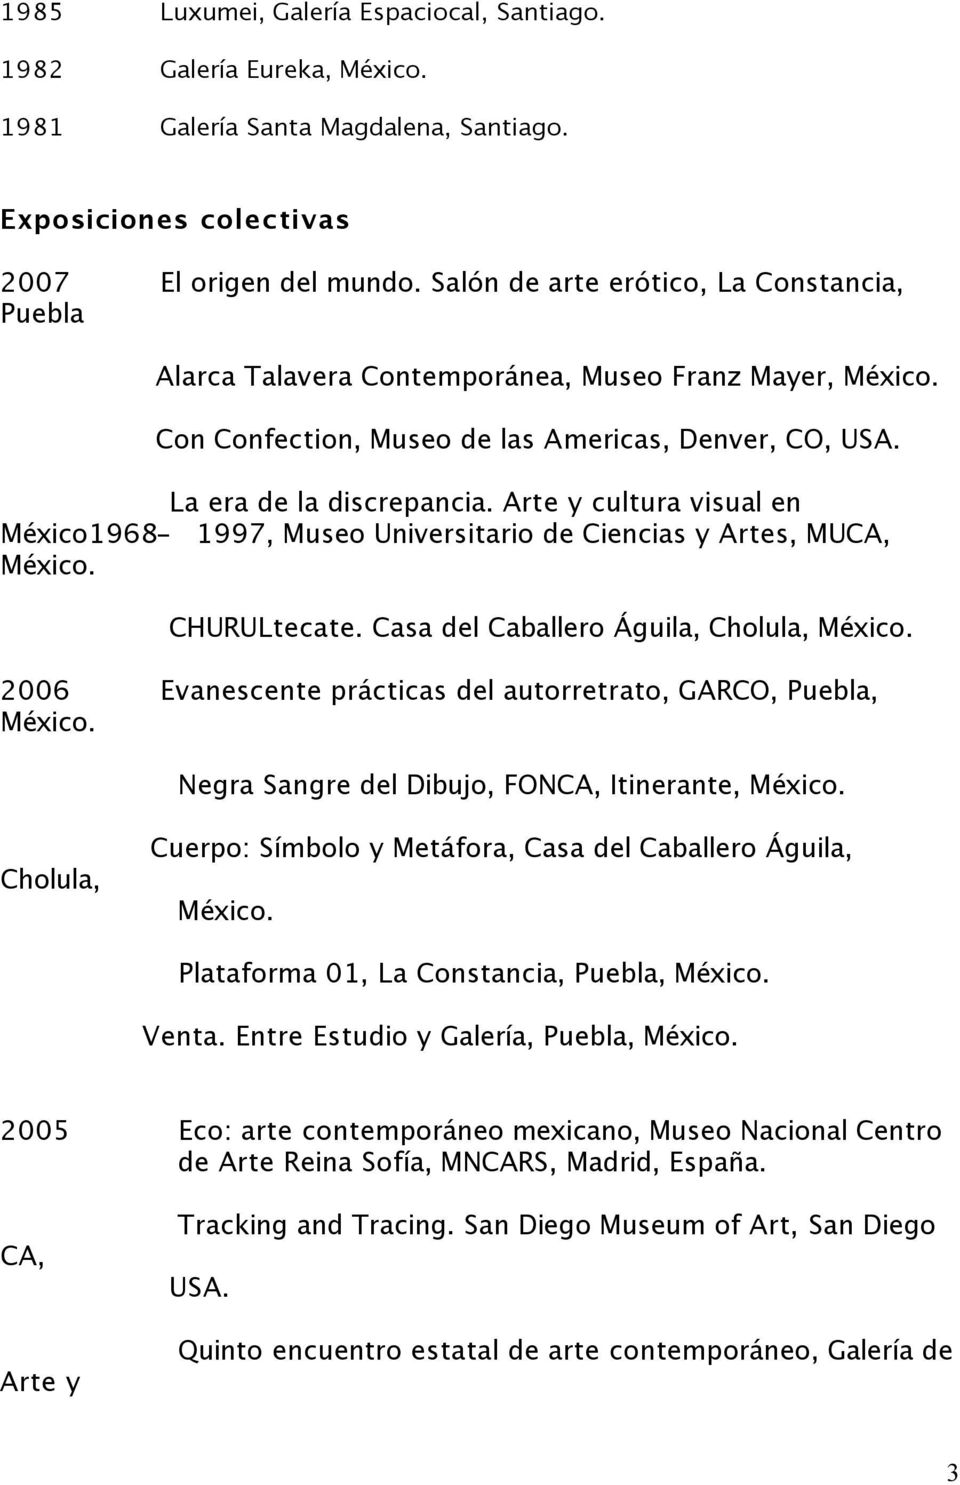 Arte y cultura visual en México1968-1997, Museo Universitario de Ciencias y Artes, MUCA, CHURULtecate.